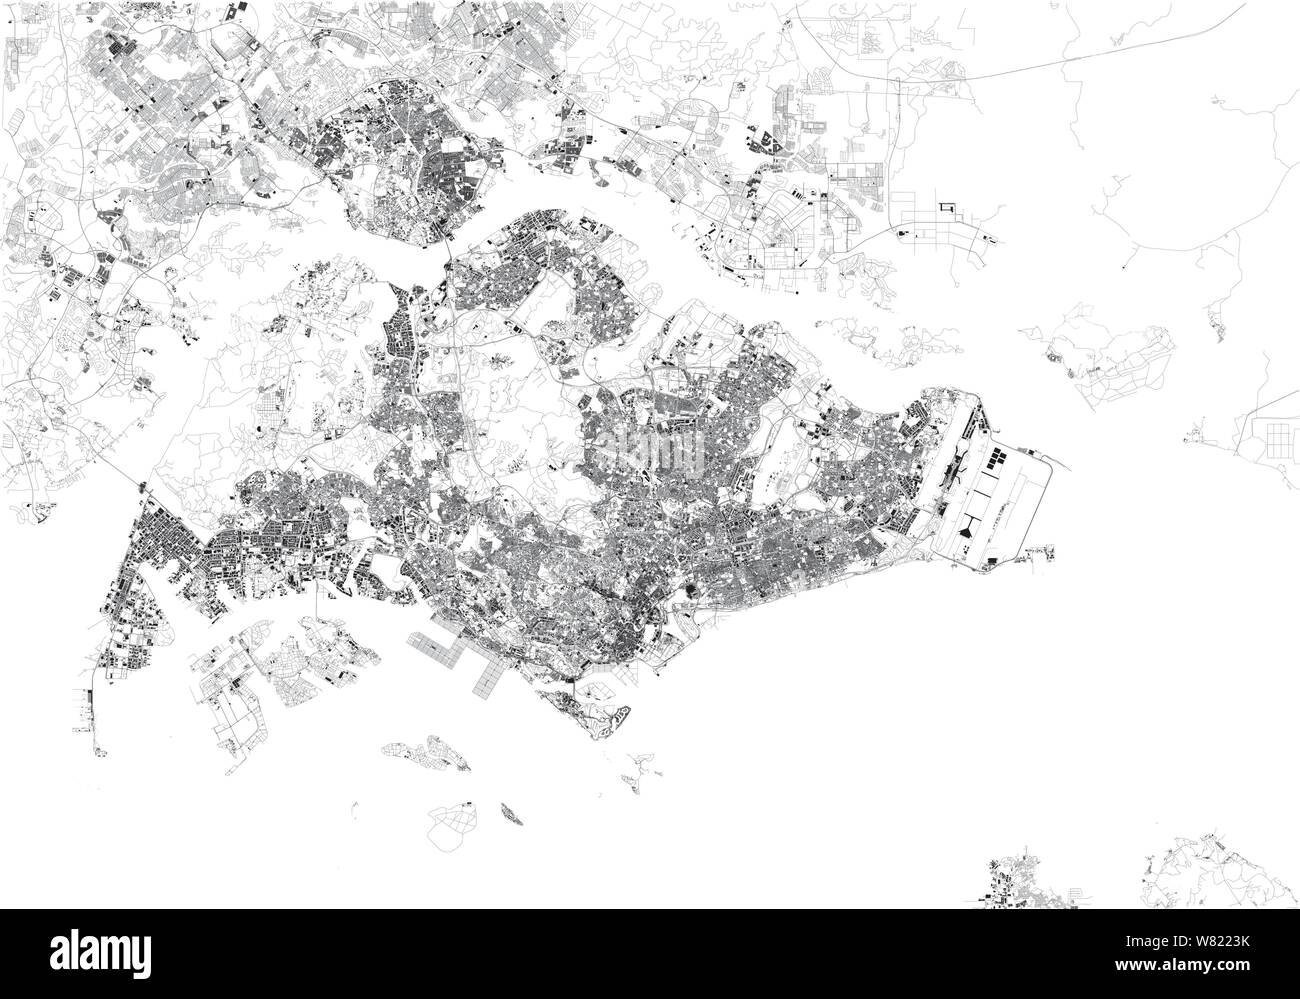 Mappa satellitare della città di Singapore. Repubblica di Singapore. È un'isola città-stato nel sud-est asiatico. Mappa di strade e gli edifici della città Illustrazione Vettoriale